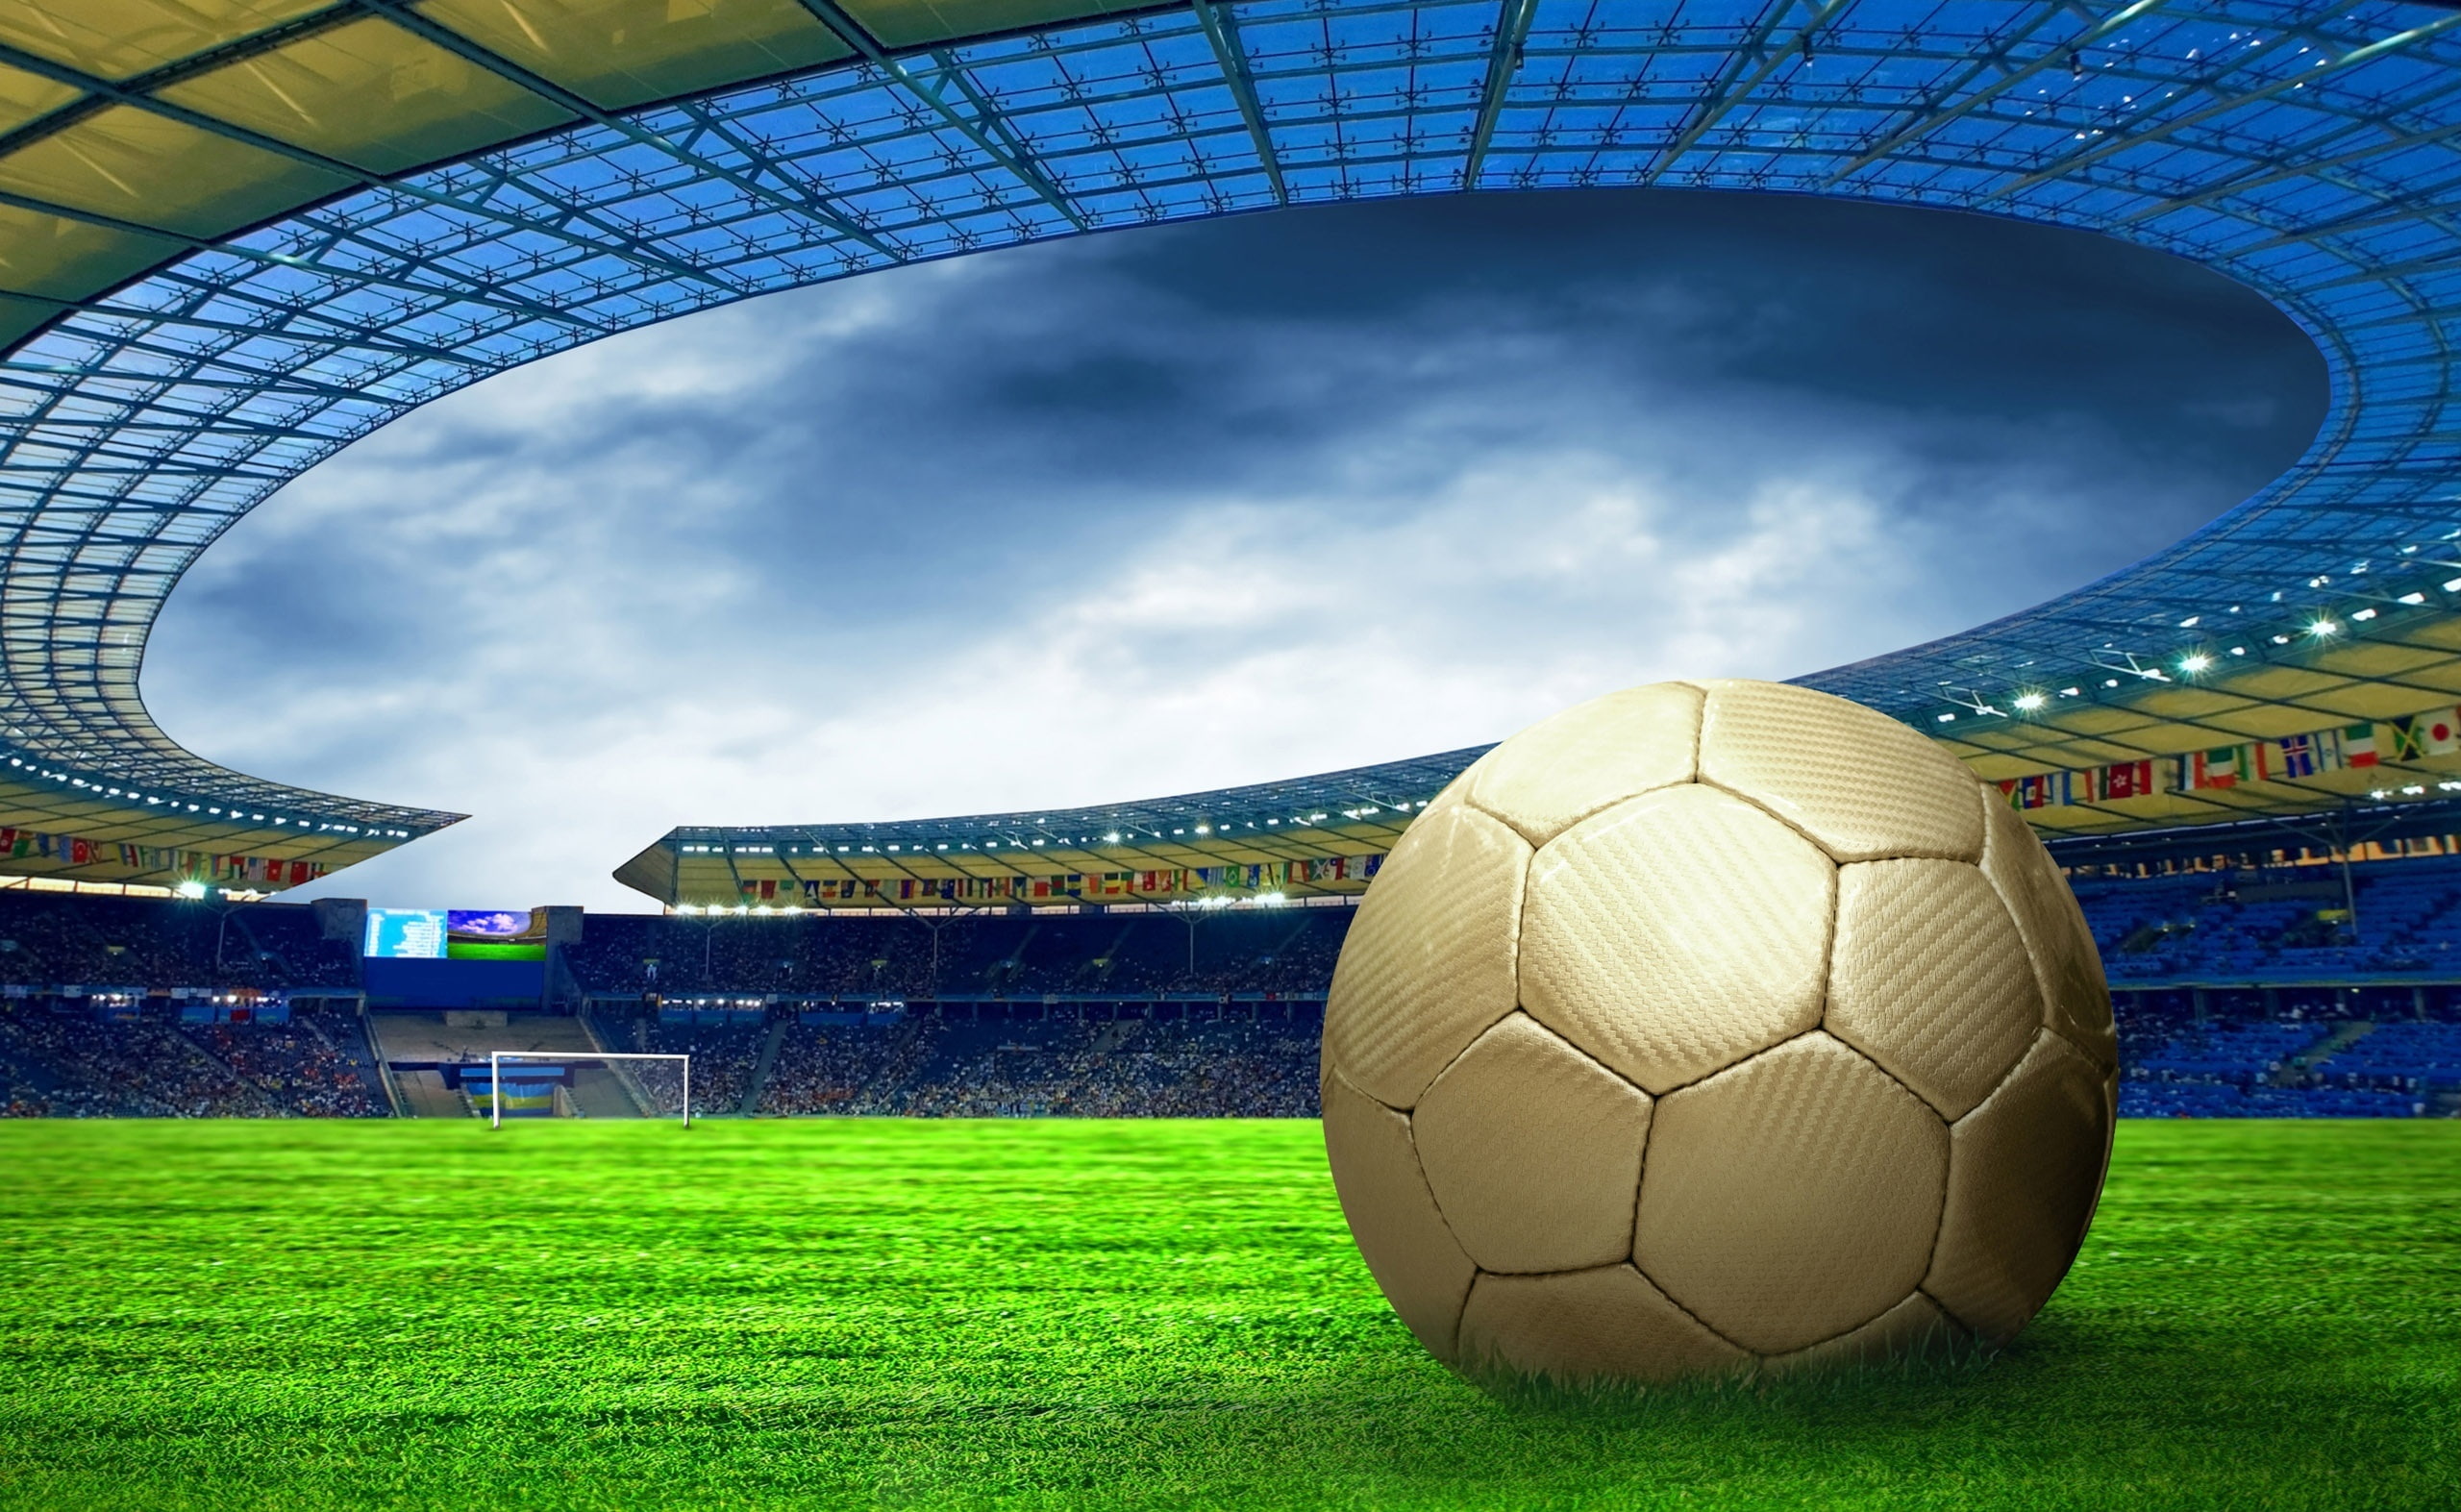 Soccer Stadium, gold soccer ball illustration, Sports, Football